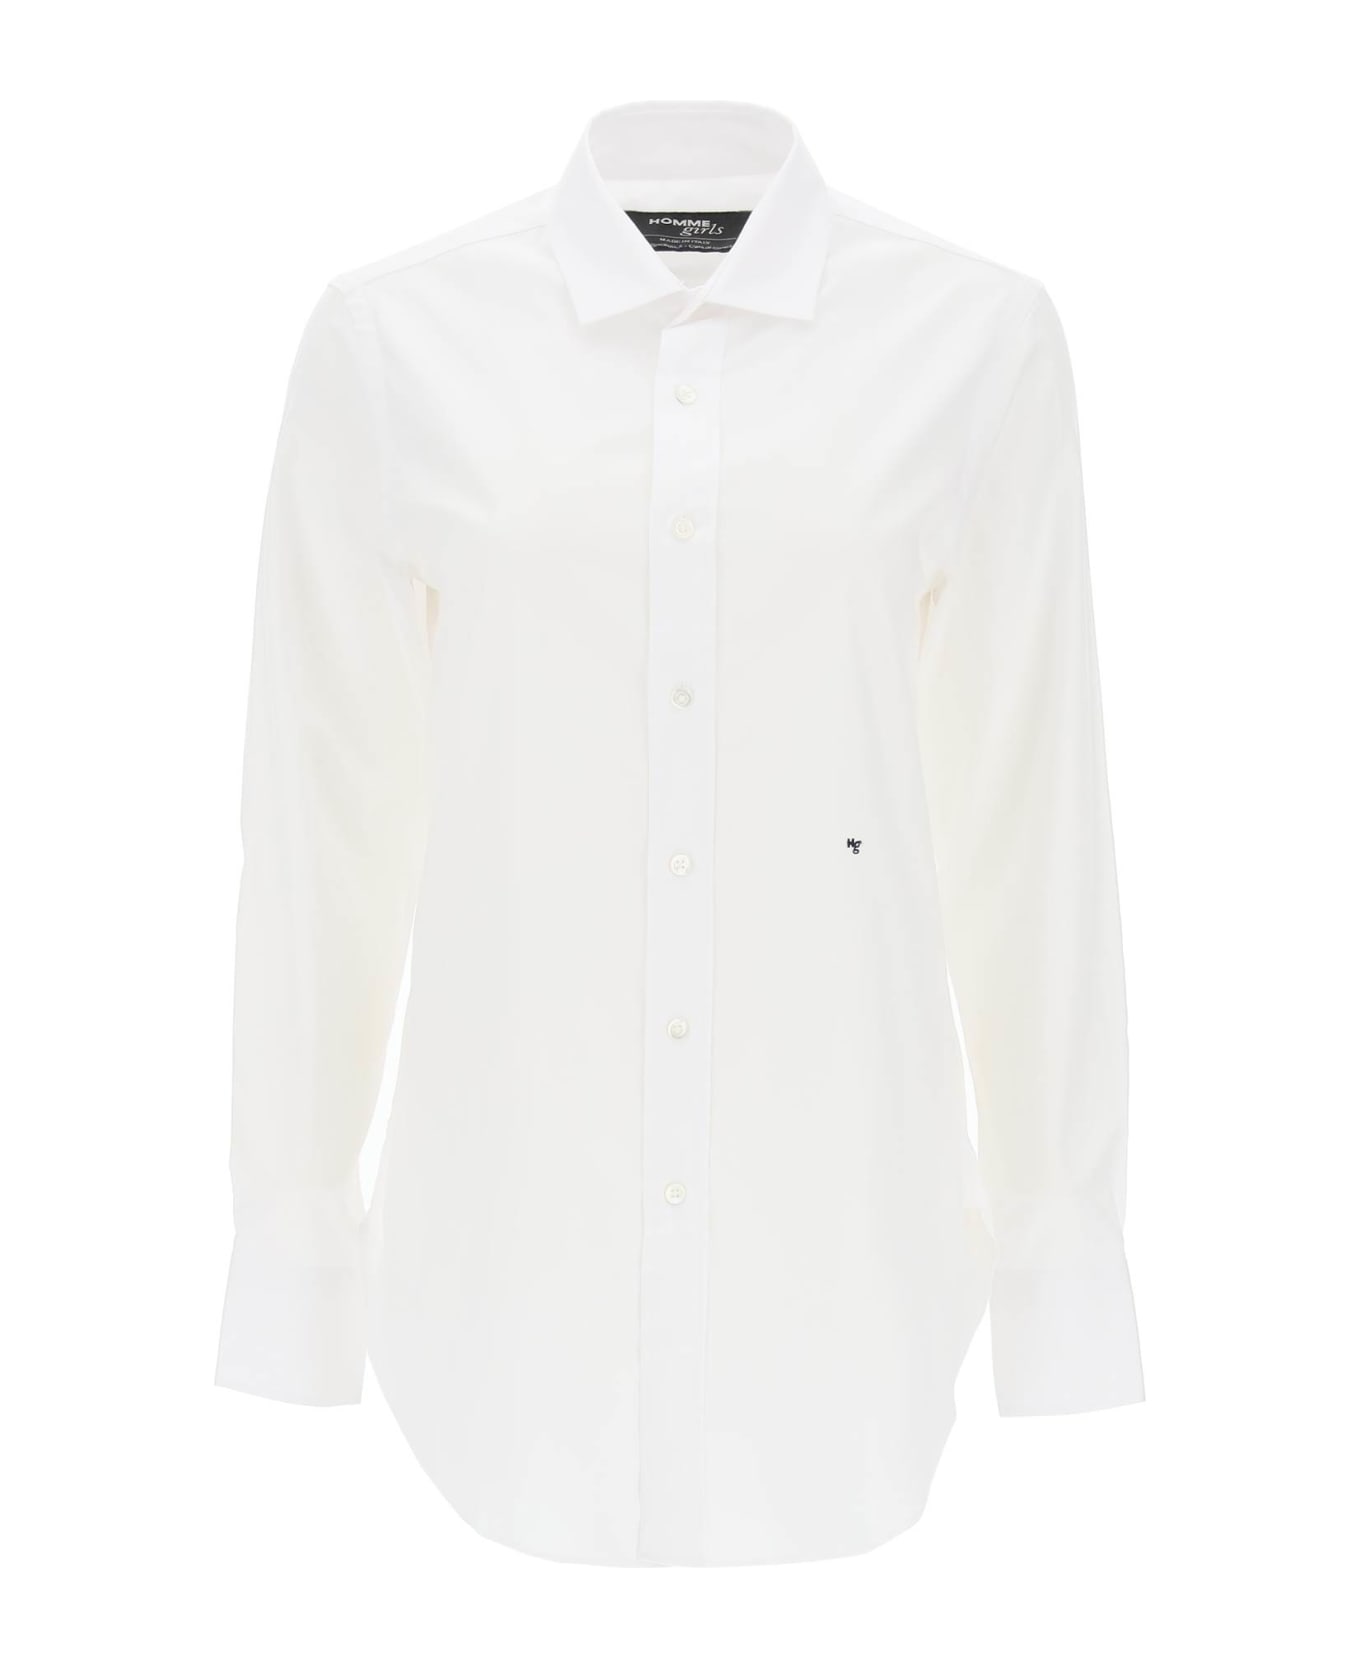 HommeGirls Cotton Twill Shirt - WHITE (White)